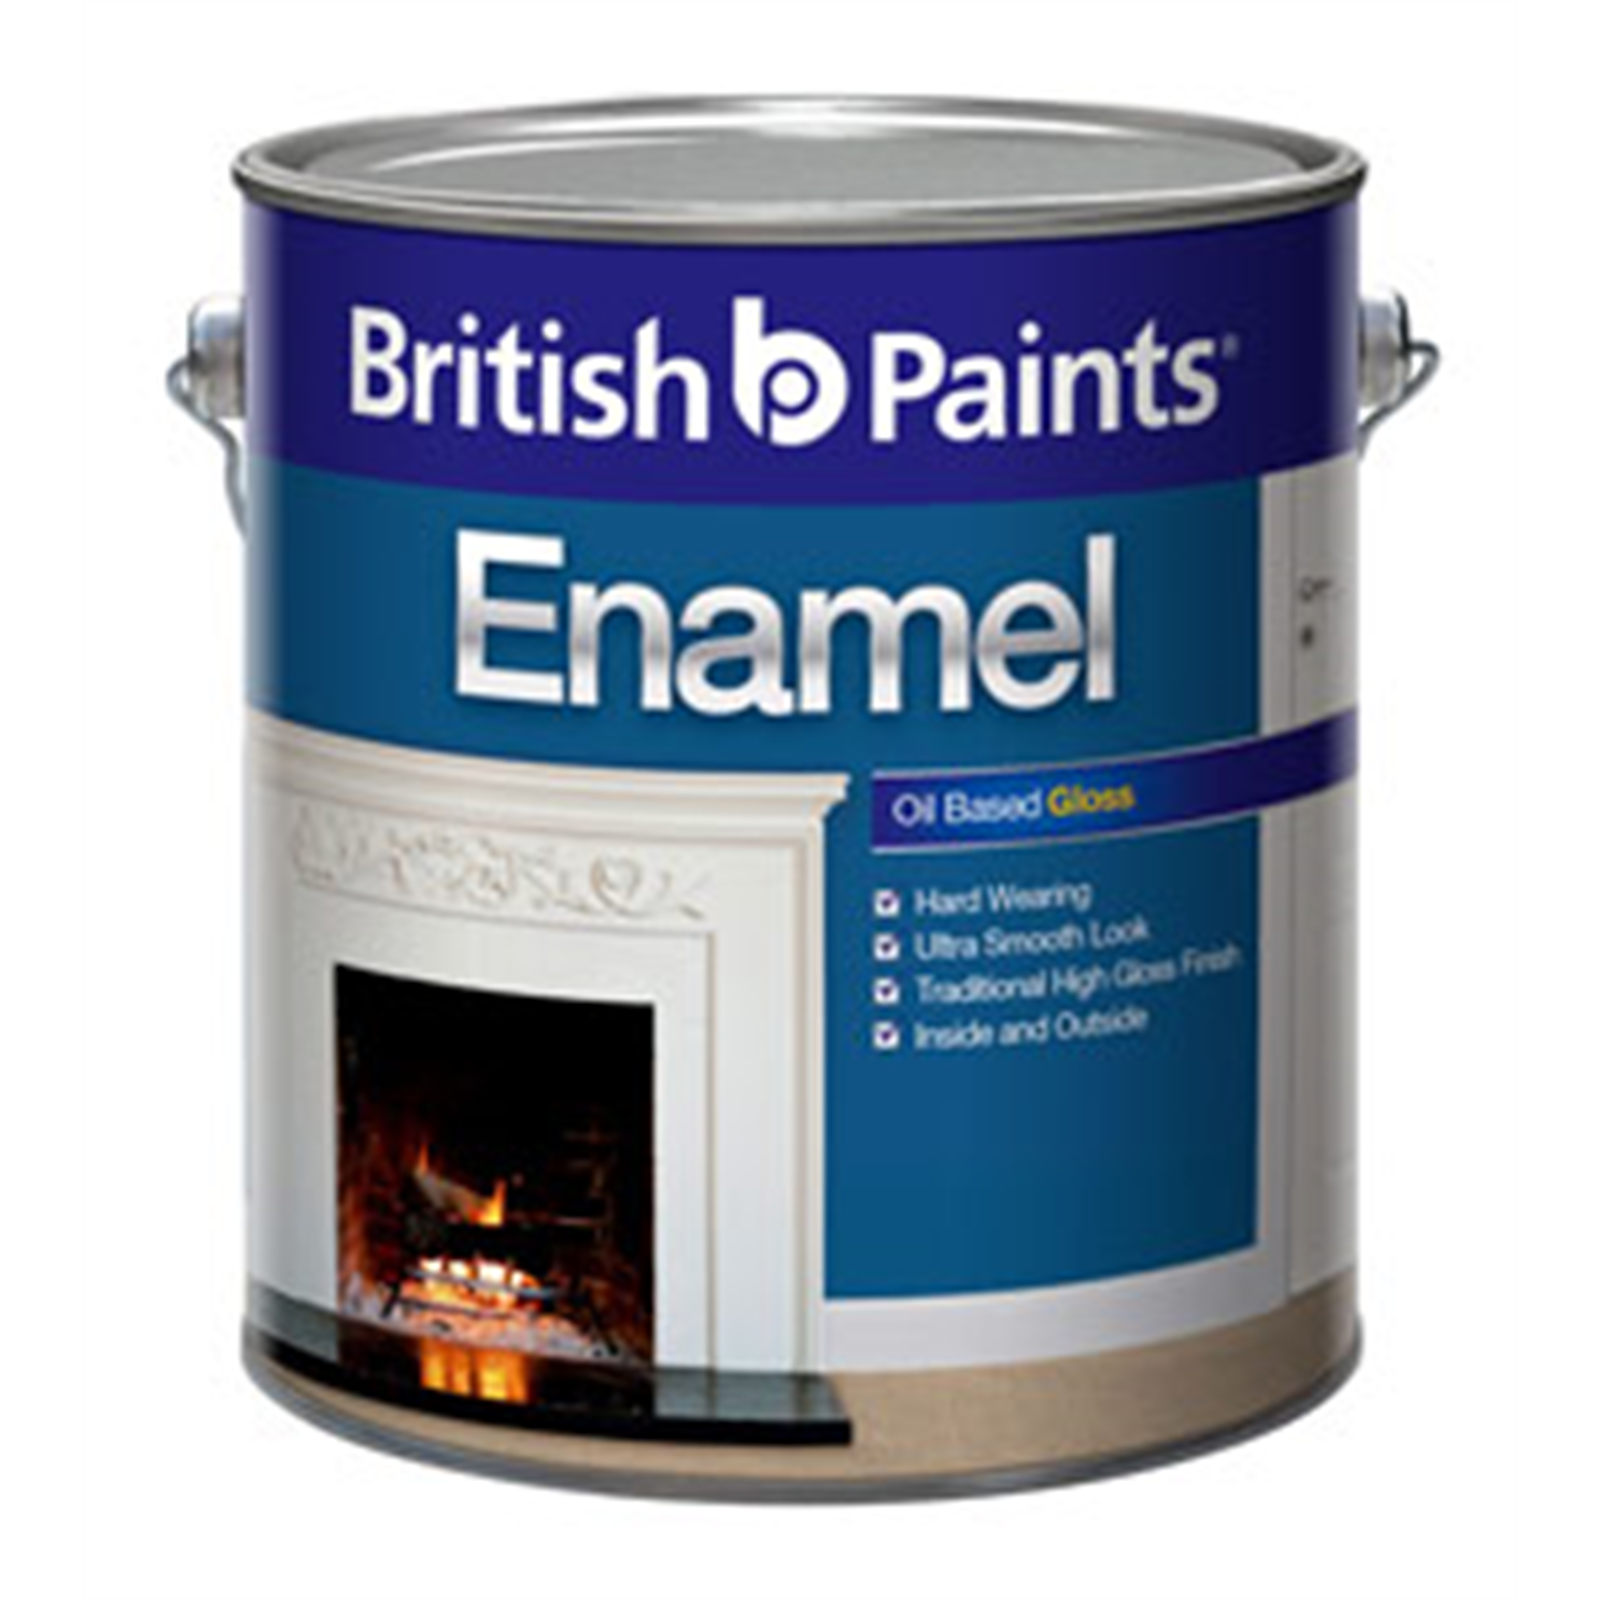 British Paints 2L Gloss White Enamel Paint